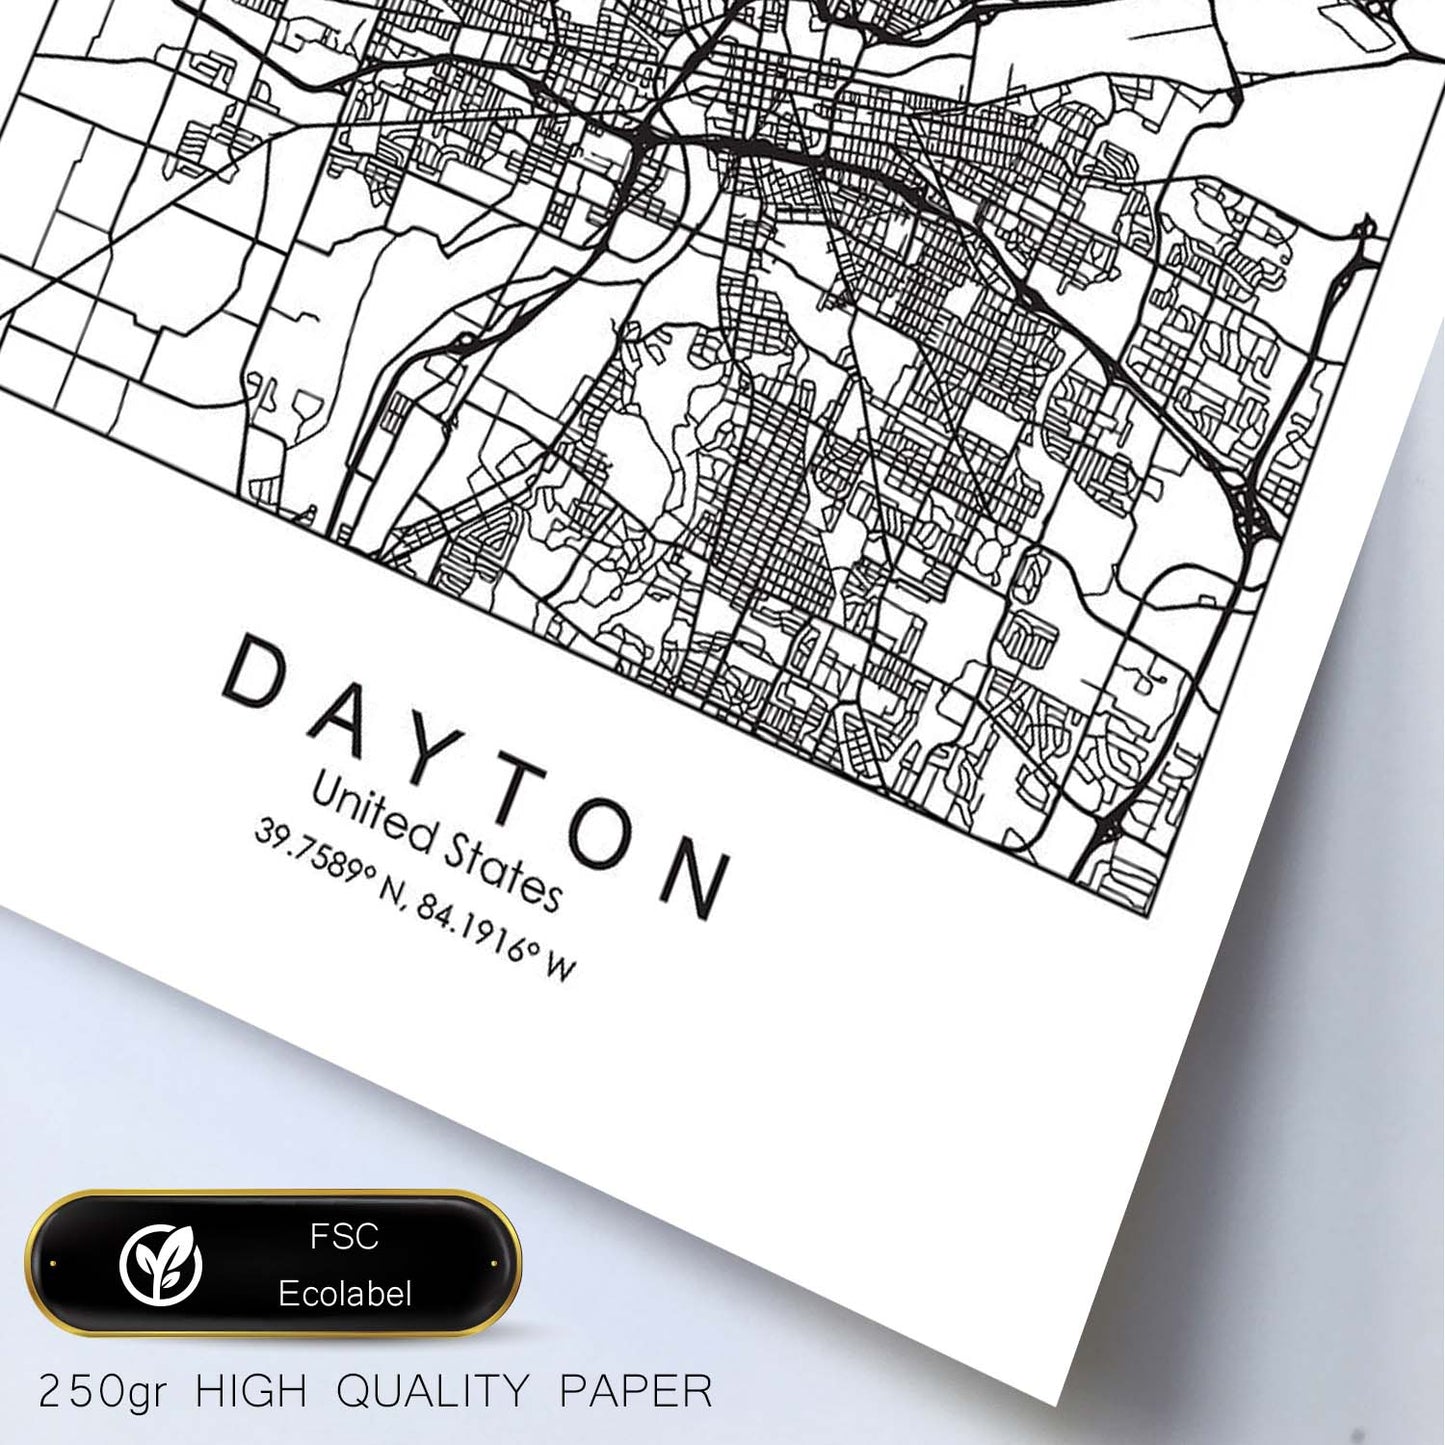 Poster con mapa de Dayton. Lámina de Estados Unidos, con imágenes de mapas y carreteras-Artwork-Nacnic-Nacnic Estudio SL